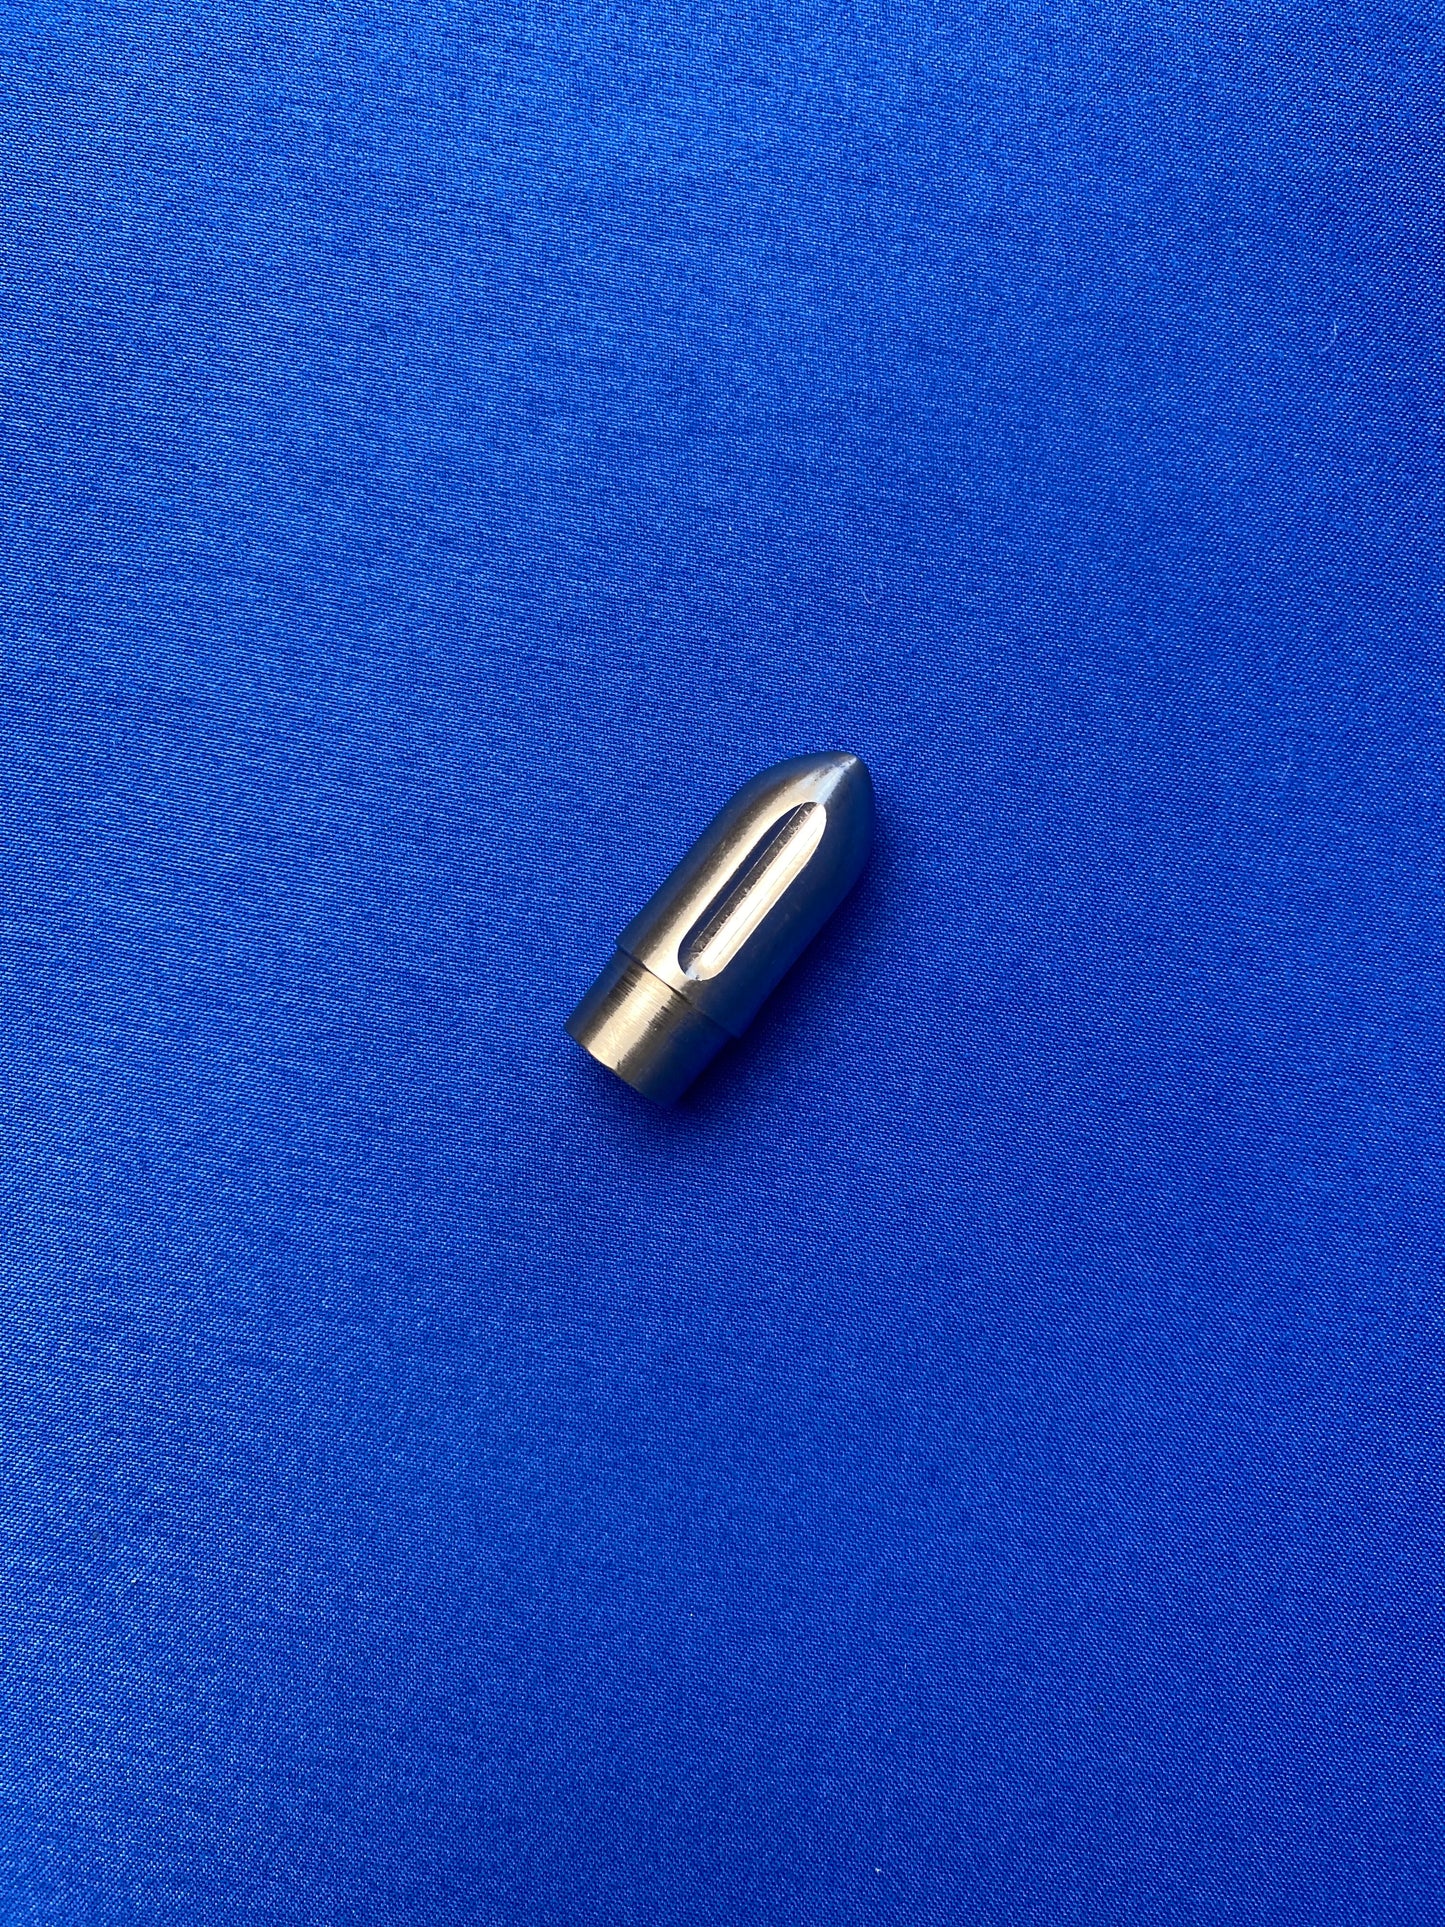 Bullet Tip for 8mm Vascular Tunnelers